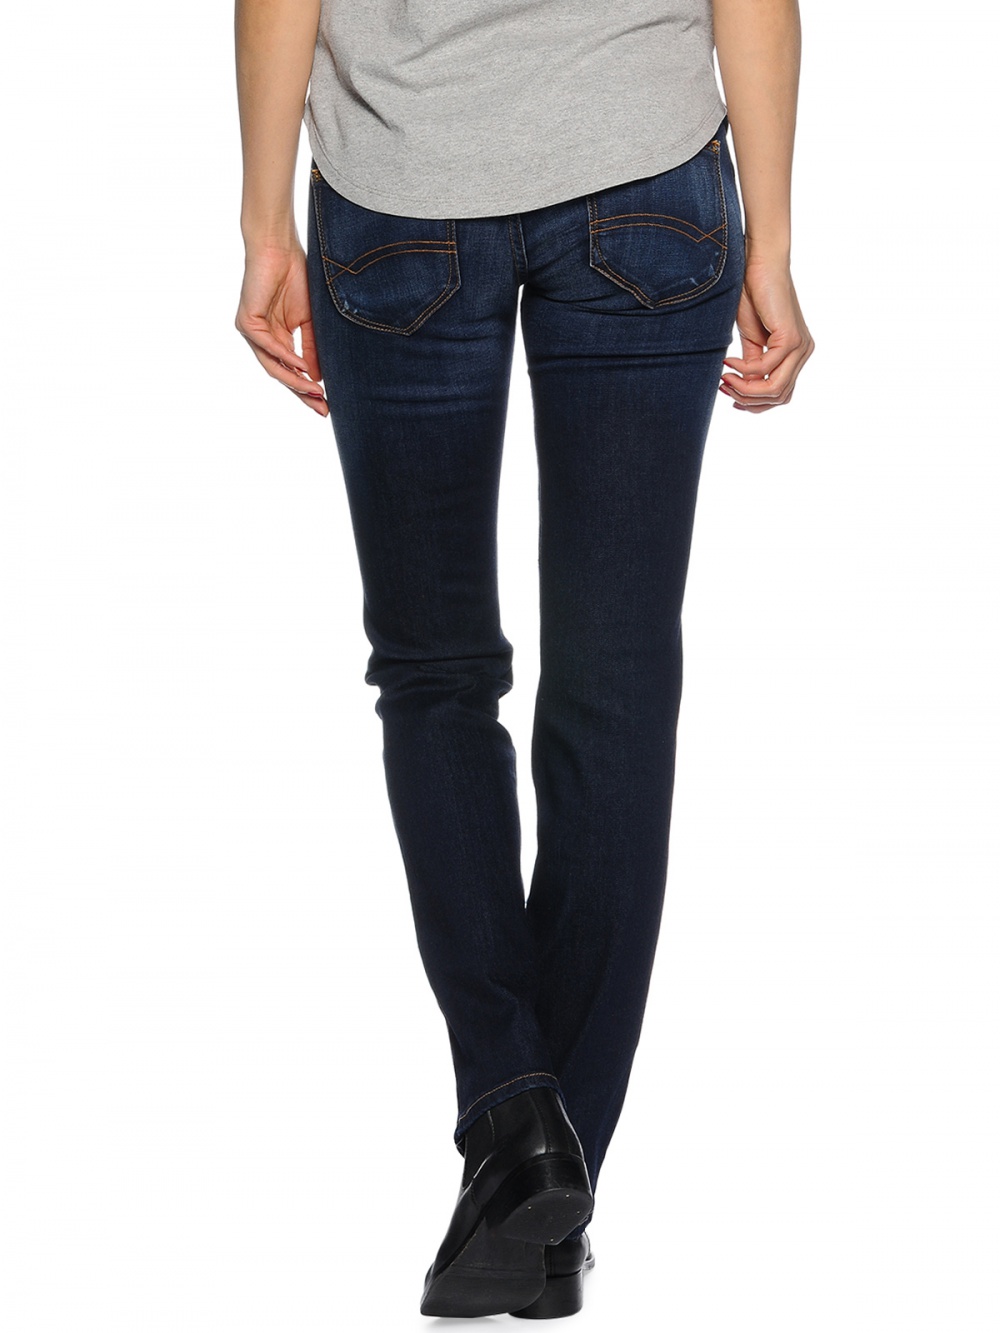 Новые джинсы Tommy Hilfiger модель Suzzy SRC, цвет синий , размер EU: 27-30